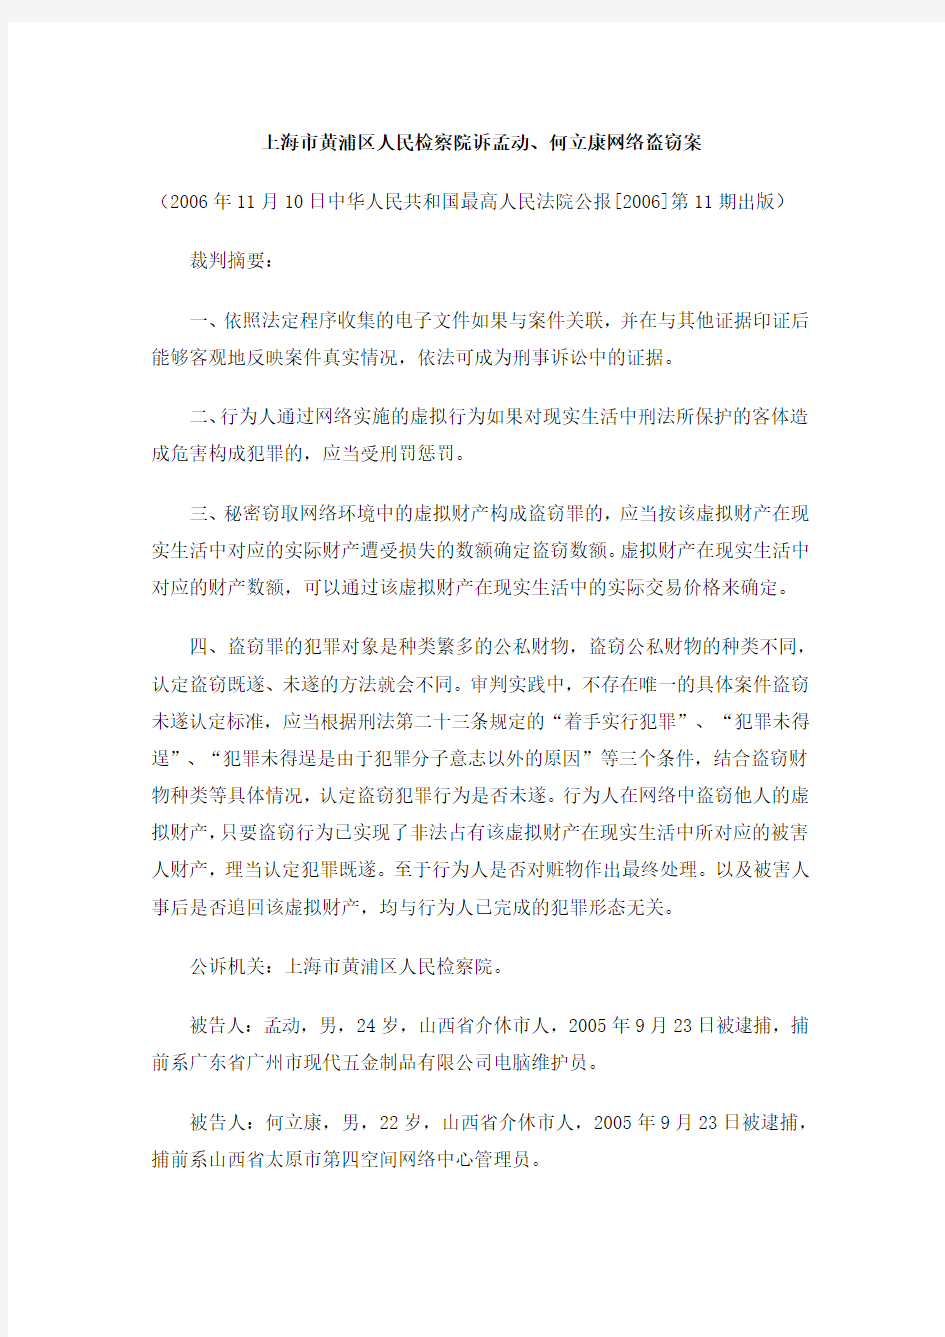 上海市黄浦区人民检察院诉孟动、何立康网络盗窃案